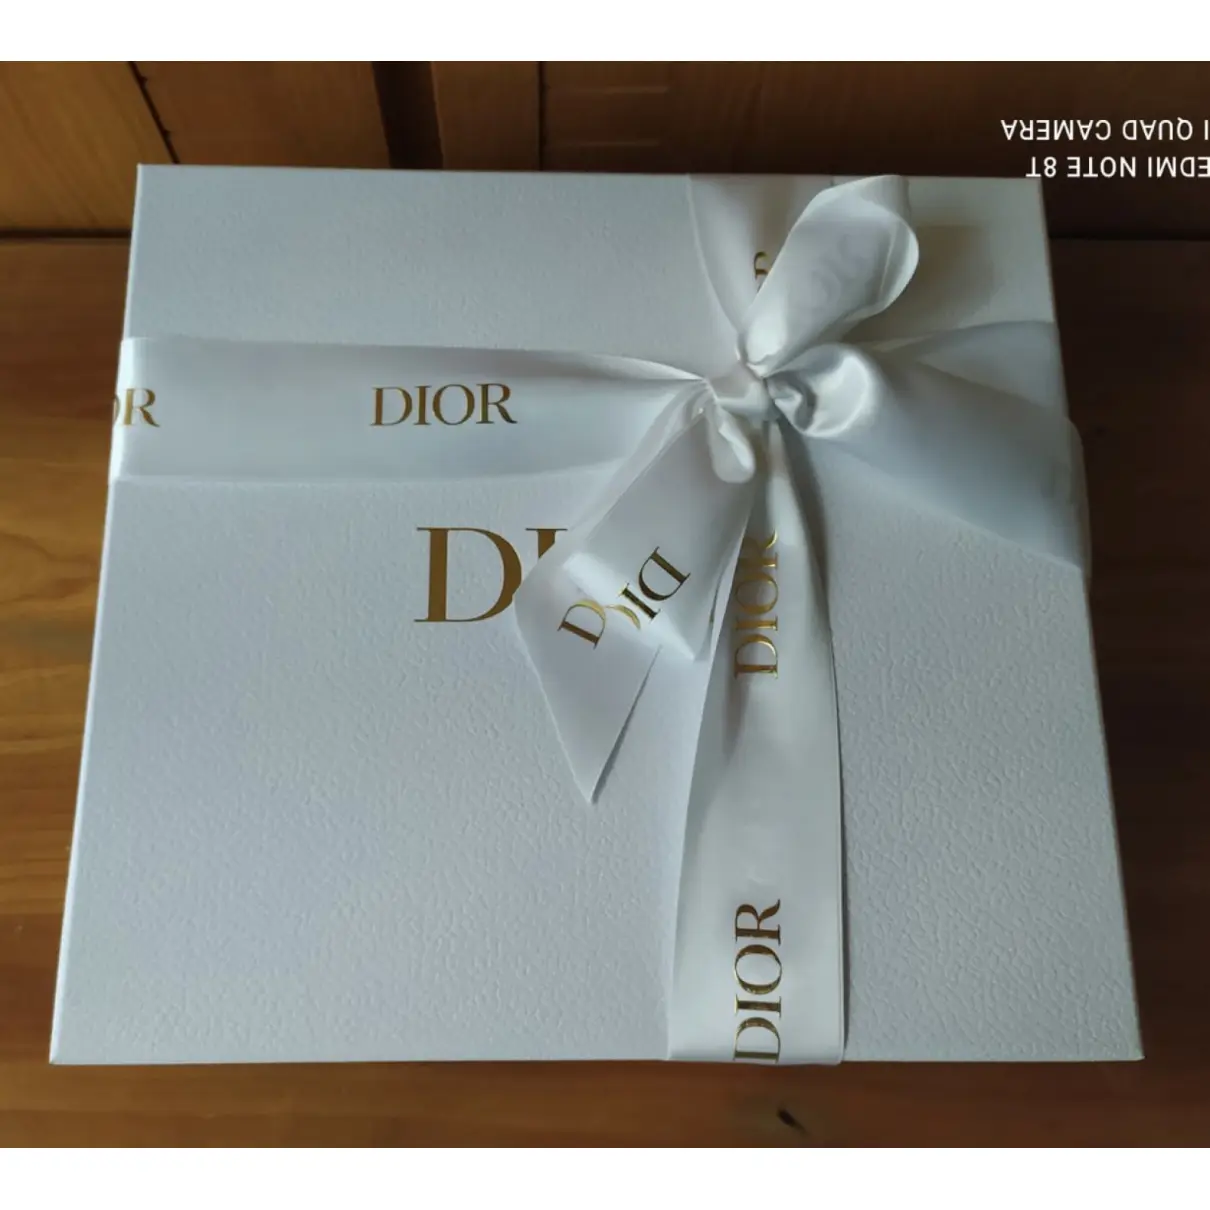 30 Montaigne cloth clutch bag Dior